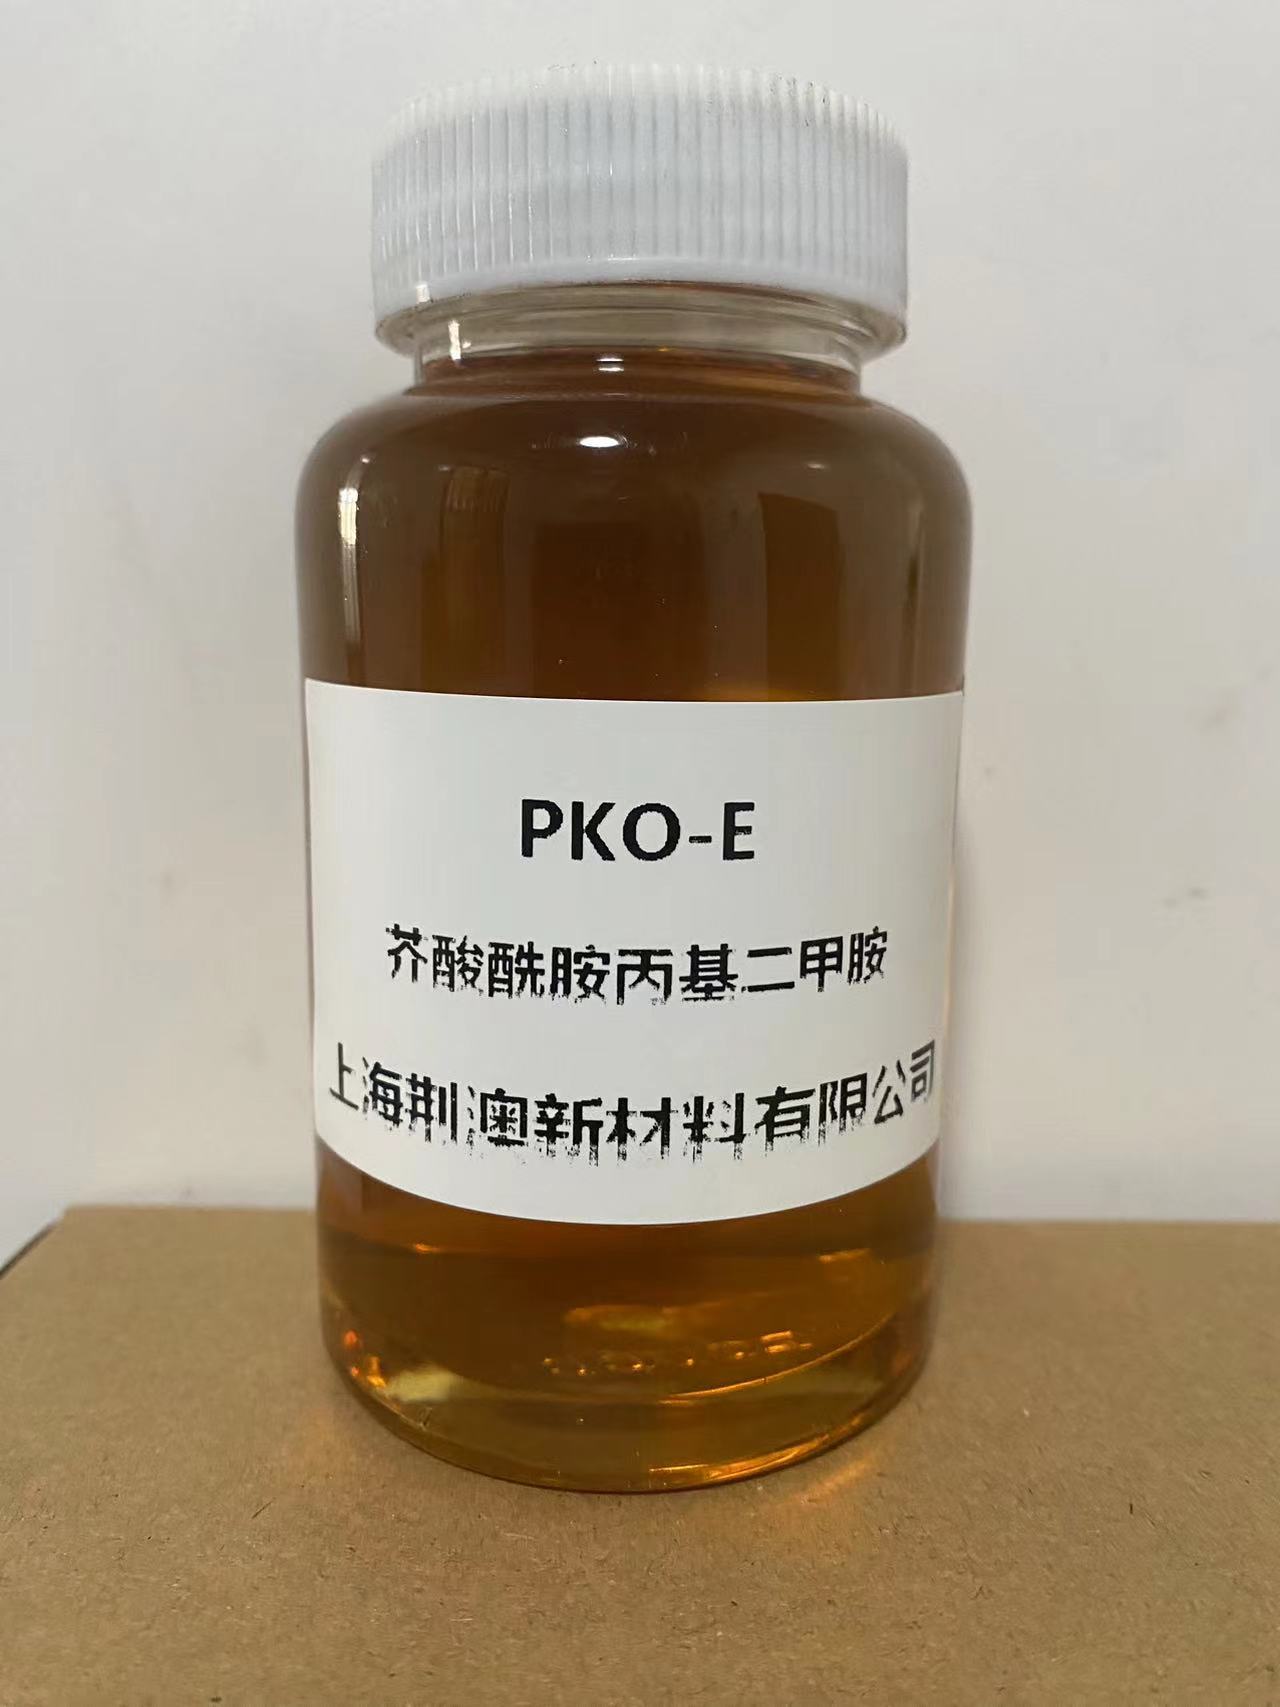 芥酸酰胺丙基二甲胺在工业中的应用